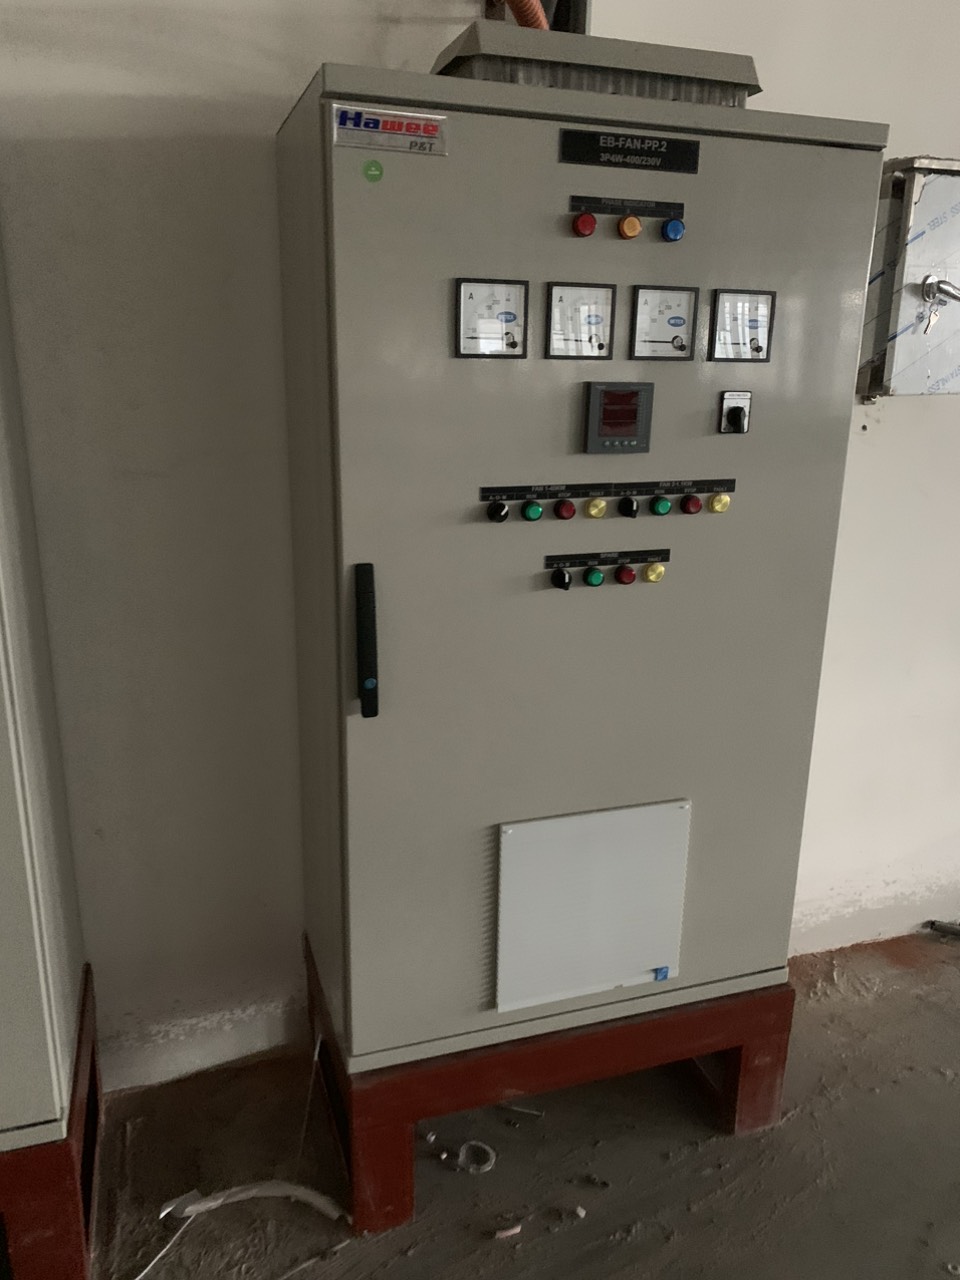 Vỏ tủ điện sản xuất theo đơn đặt hàng - Tủ Điện ASC - Công Ty TNHH Dịch Vụ Kỹ Thuật Công Nghệ ASC Việt Nam